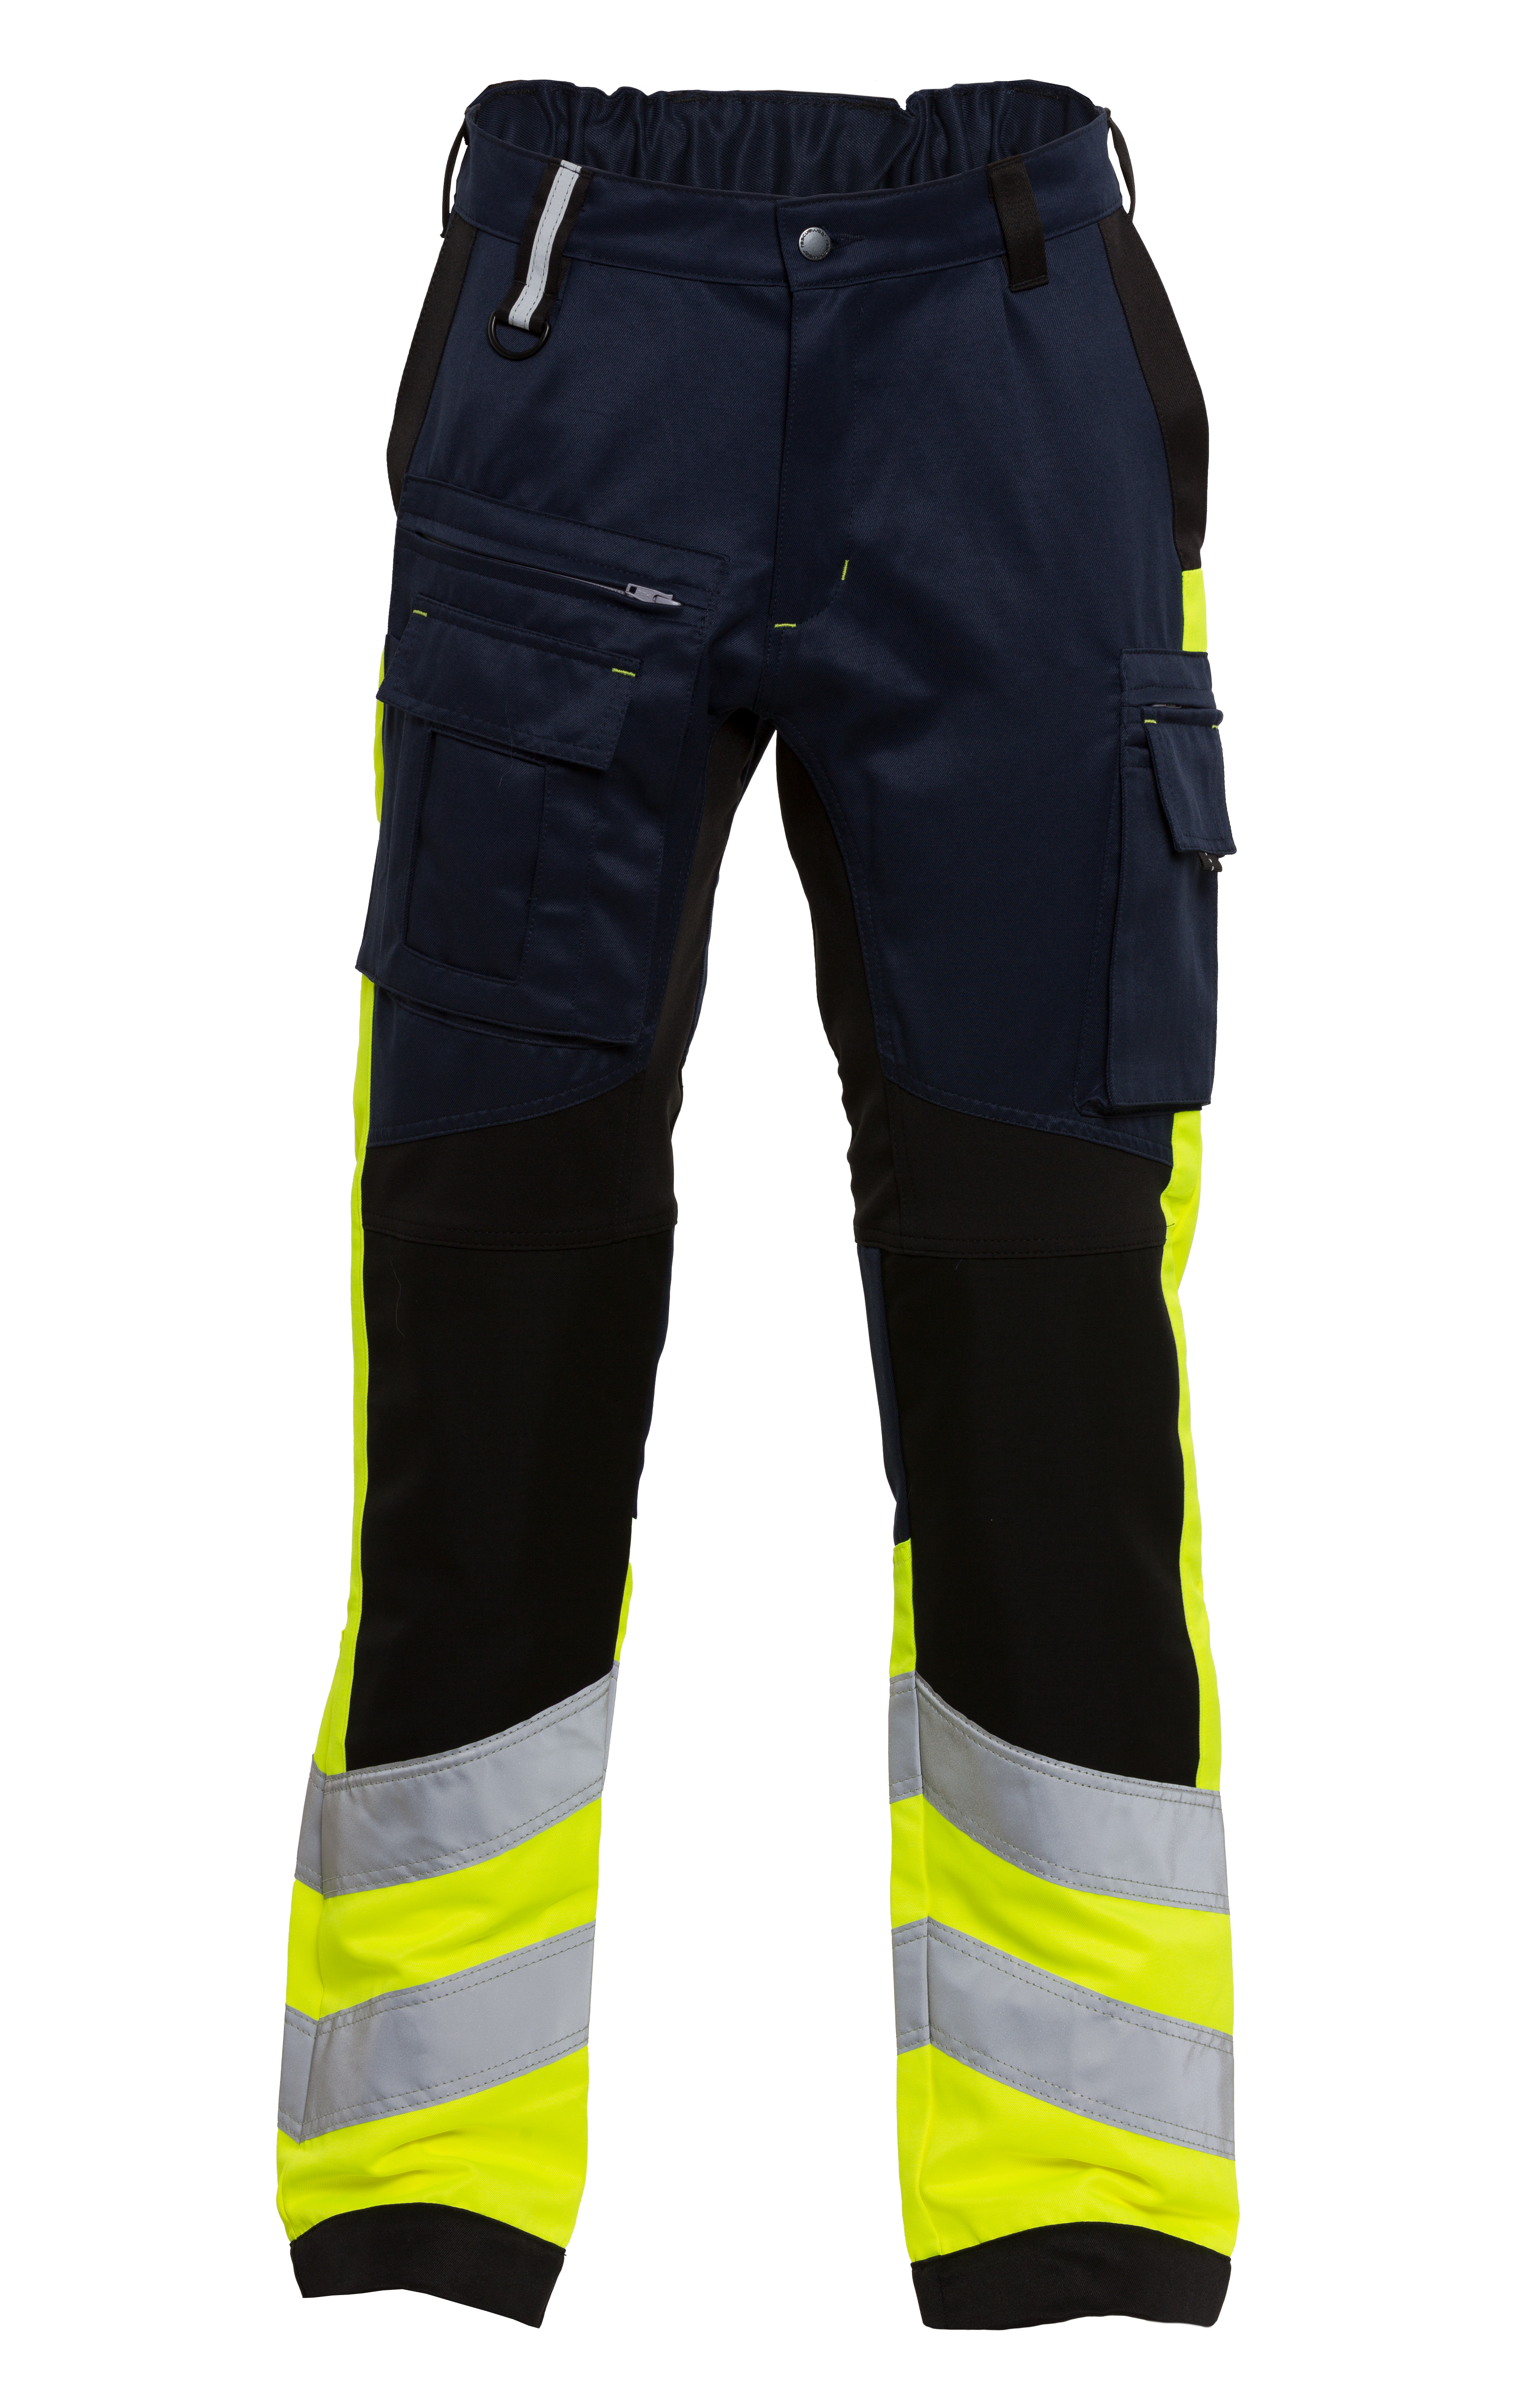 Rescuewear Unisex Hose Stretch HiVis Klasse 1 Marineblau / Schwarz / Neon Gelb  - 25